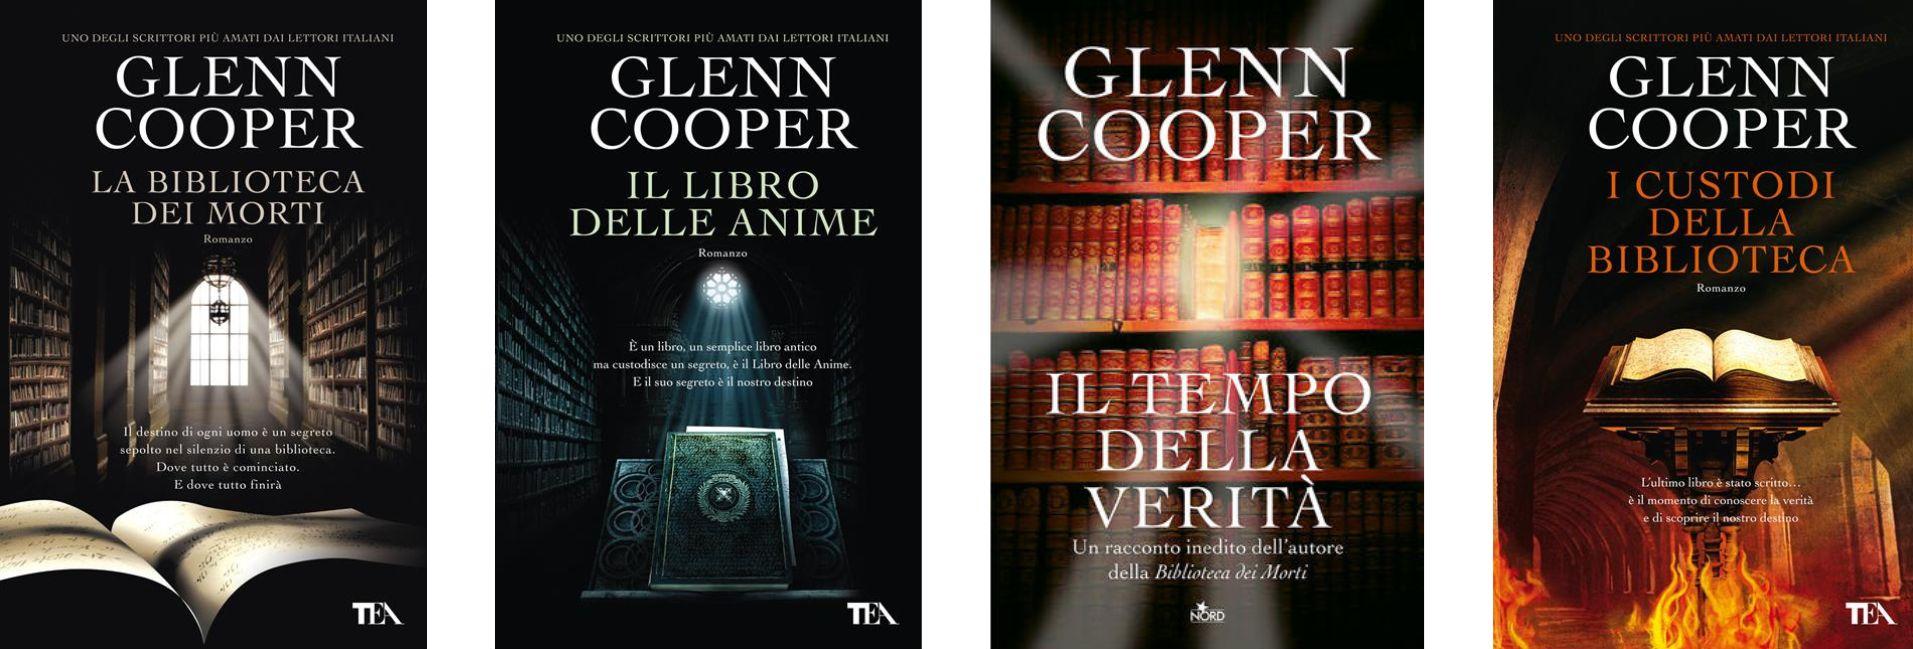 Storia, avventura e mistero: alla scoperta dei libri di Glenn Cooper 